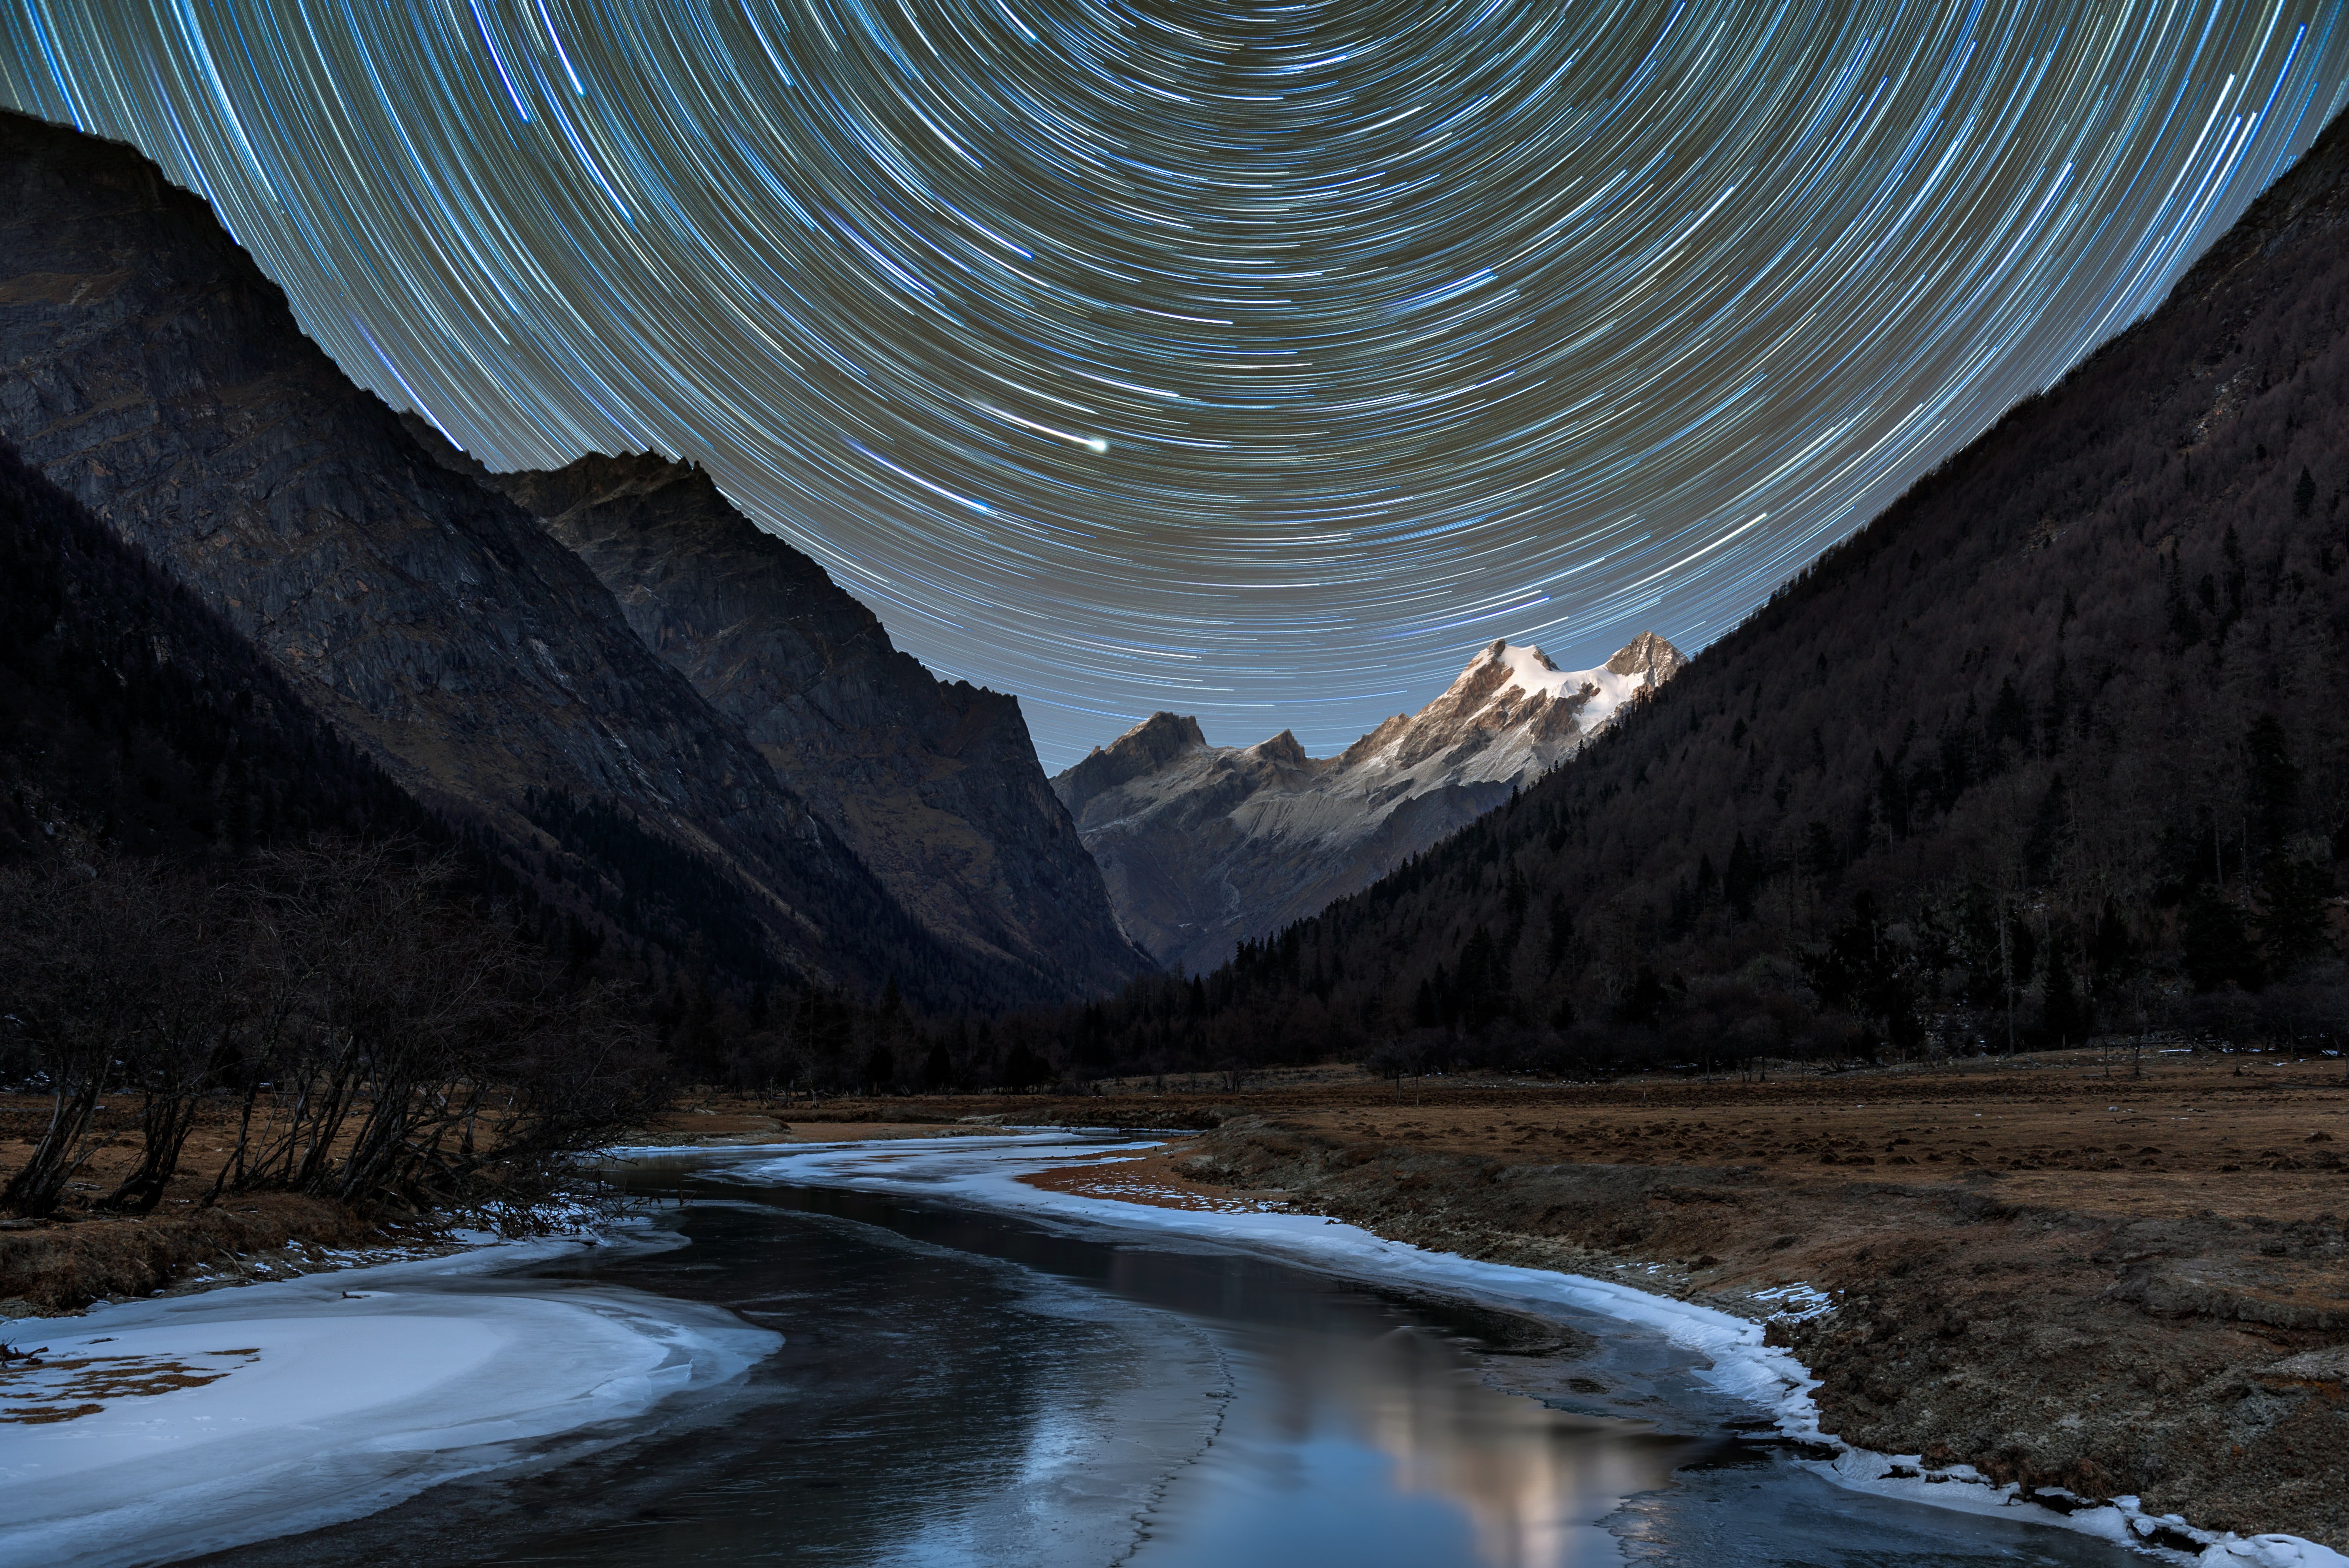 Fondos de pantalla Estrellas en remolino en paisaje montañoso